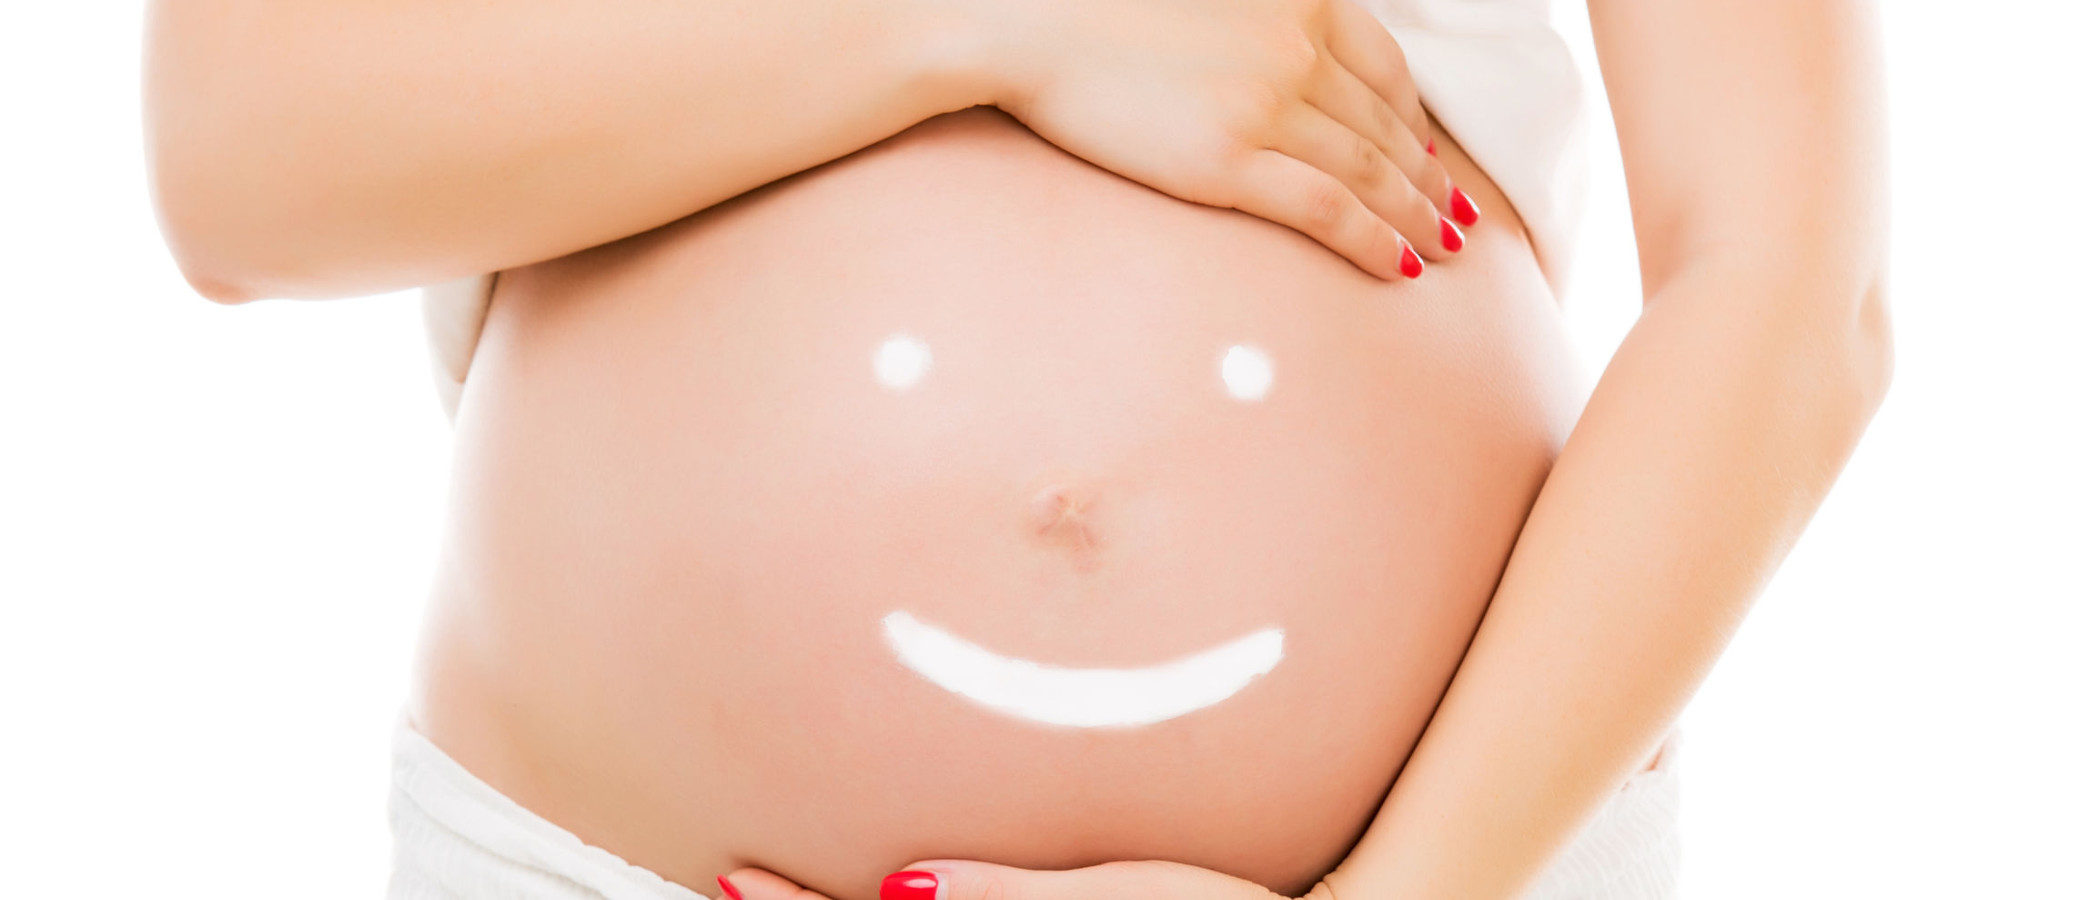 La importancia de cuidar la piel durante el embarazo